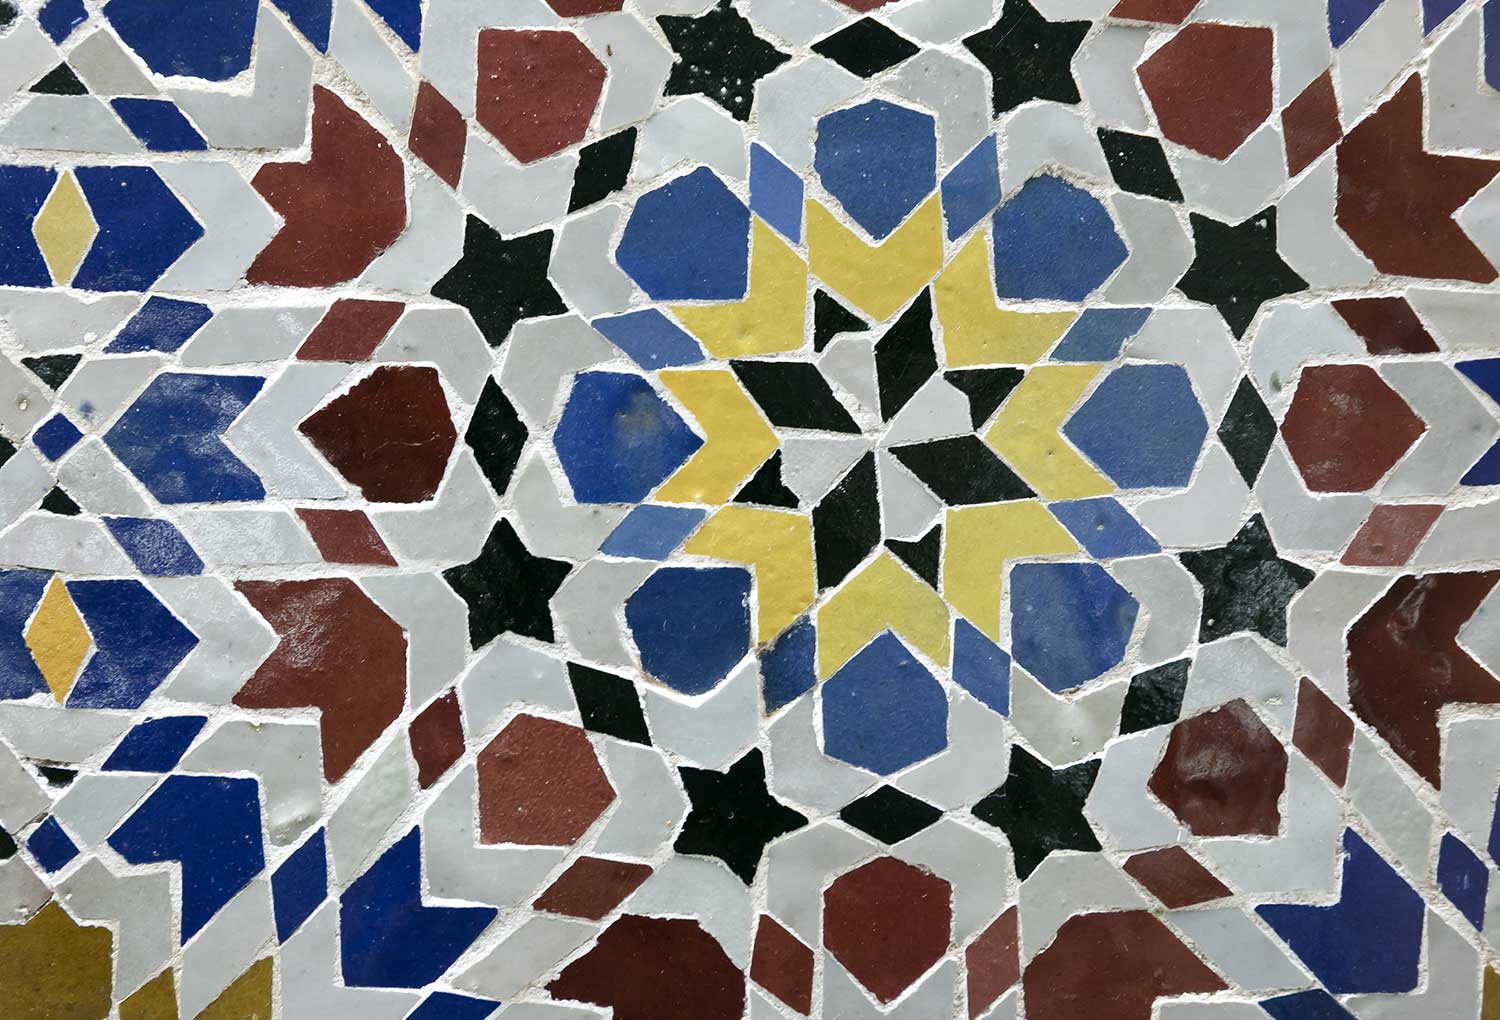 14世紀以降、モロッコからイベリア半島を通じてスペインへと、様々な色を用いたカットワークモザイクの手法が伝わった（画像は20世紀にモロッコで作られたタイル）